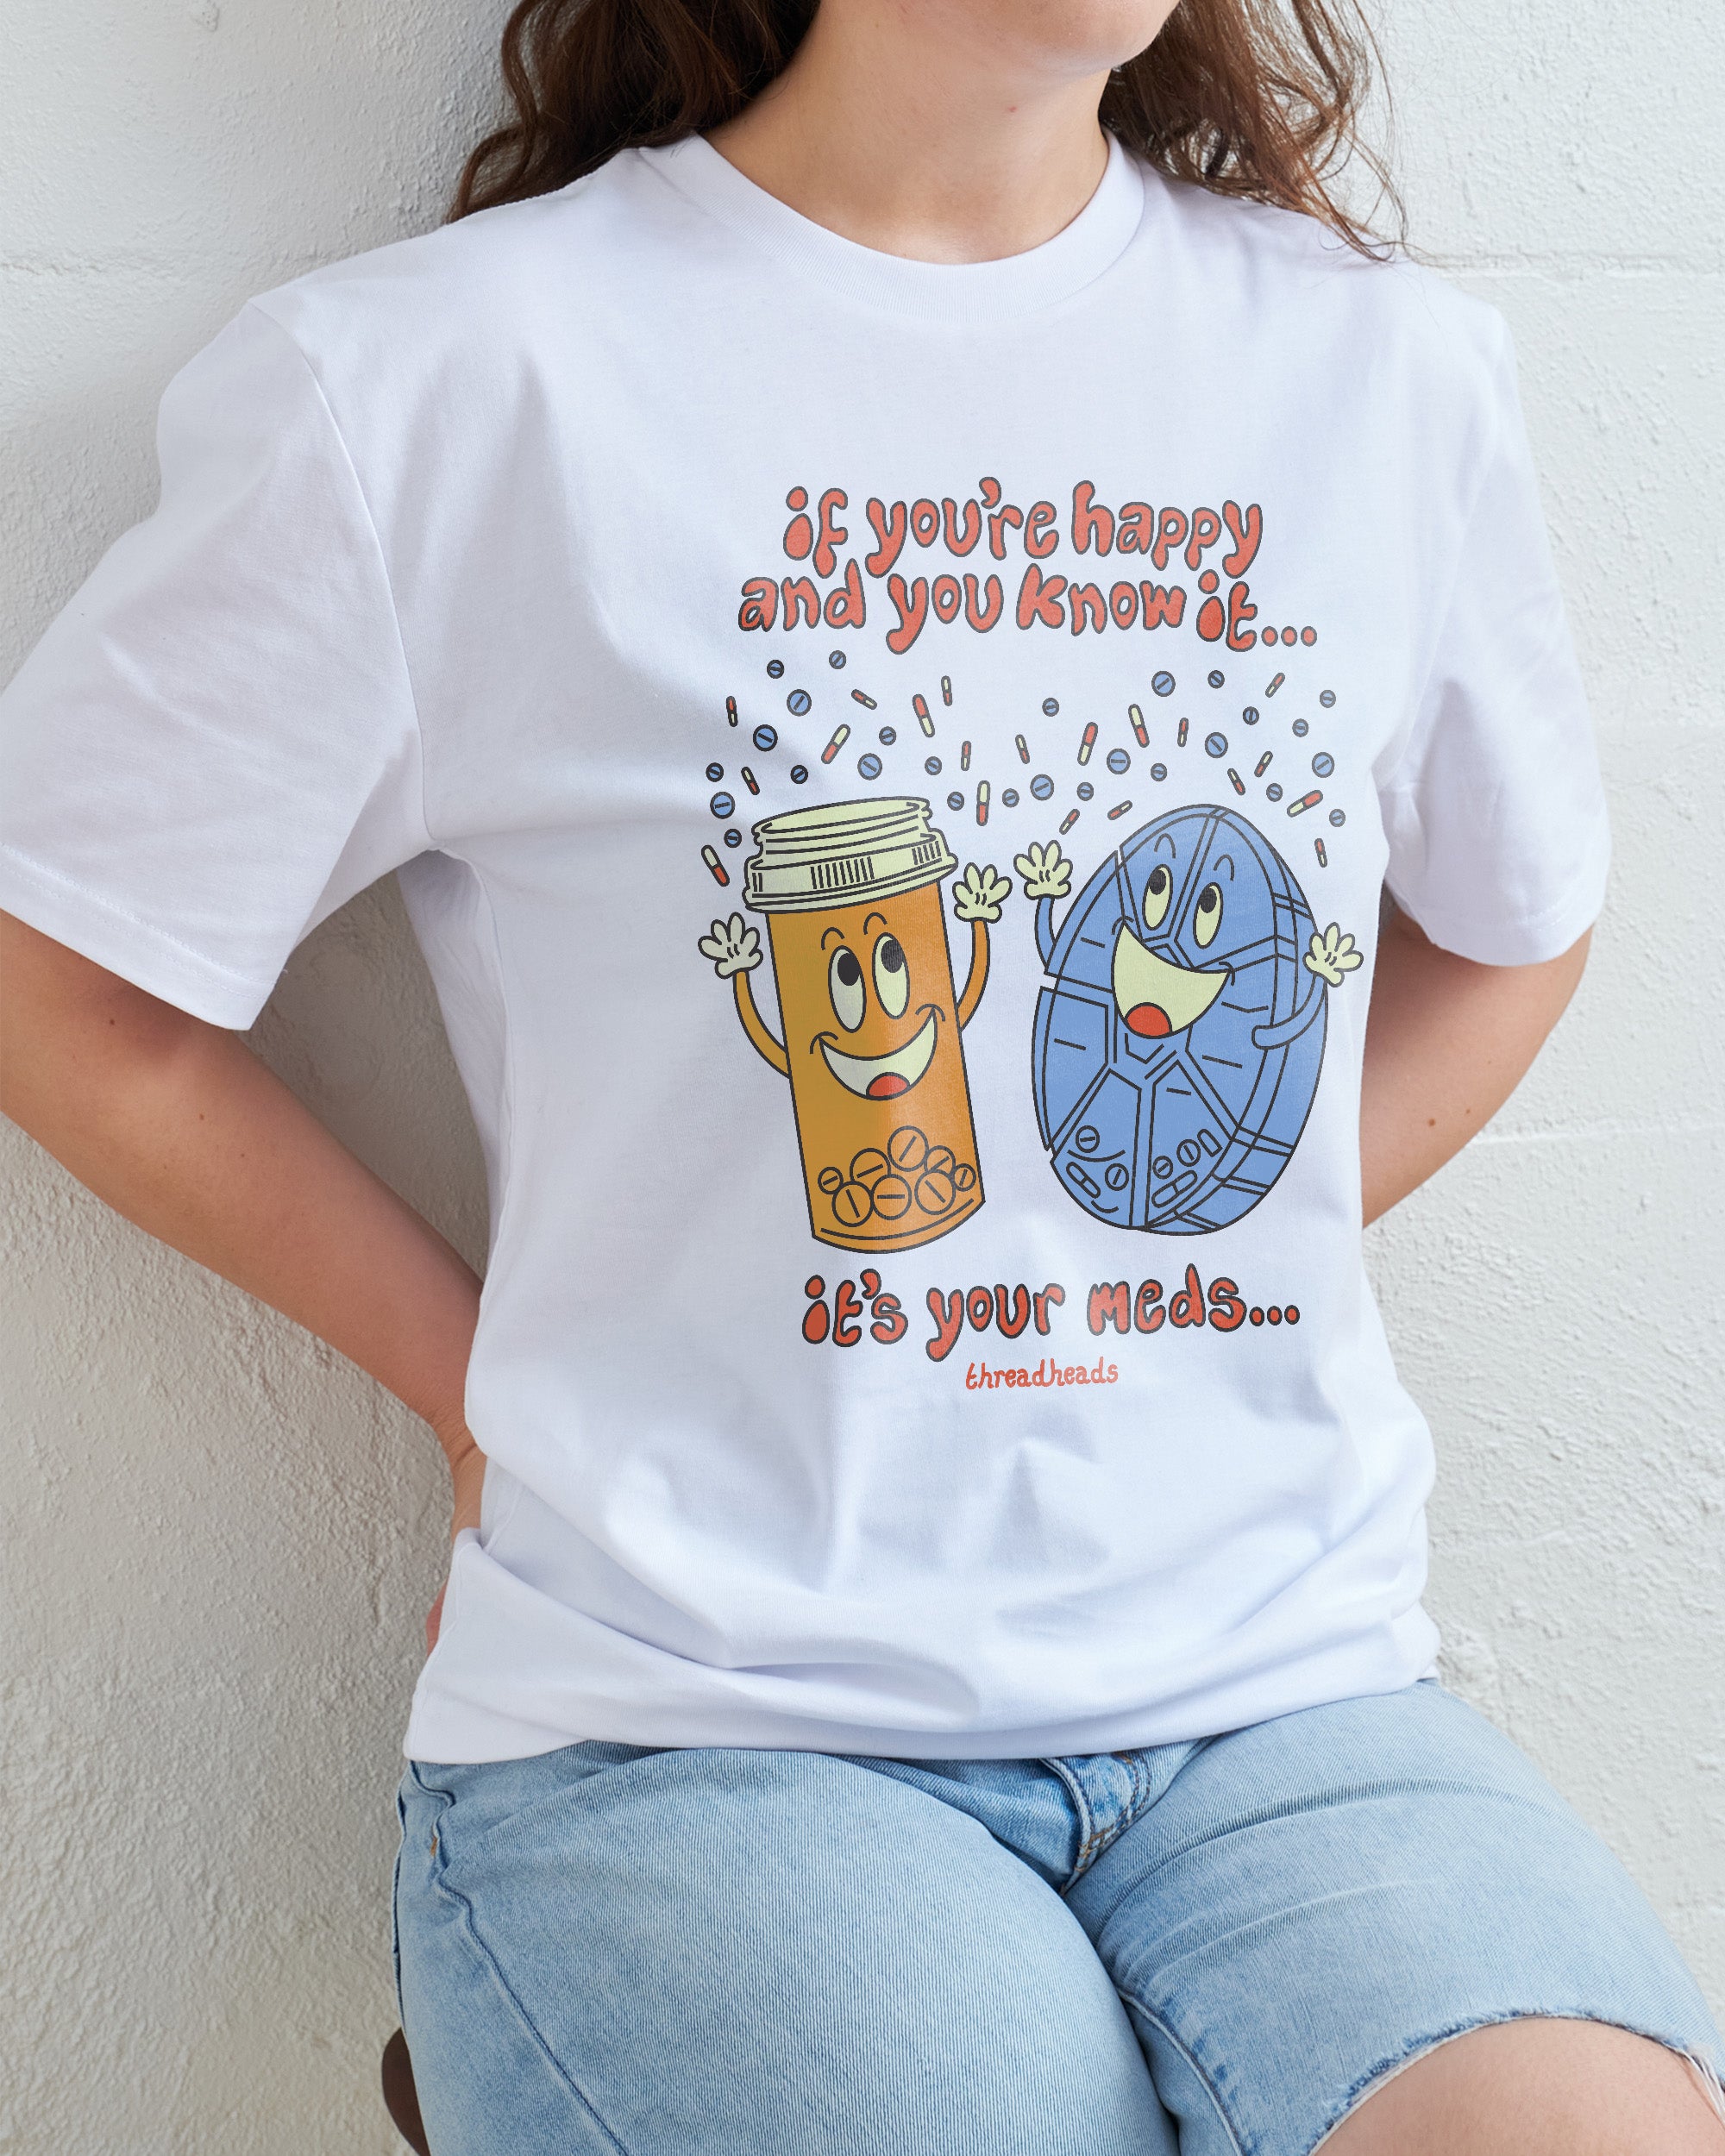 It's Your Meds T-Shirt Australia Online